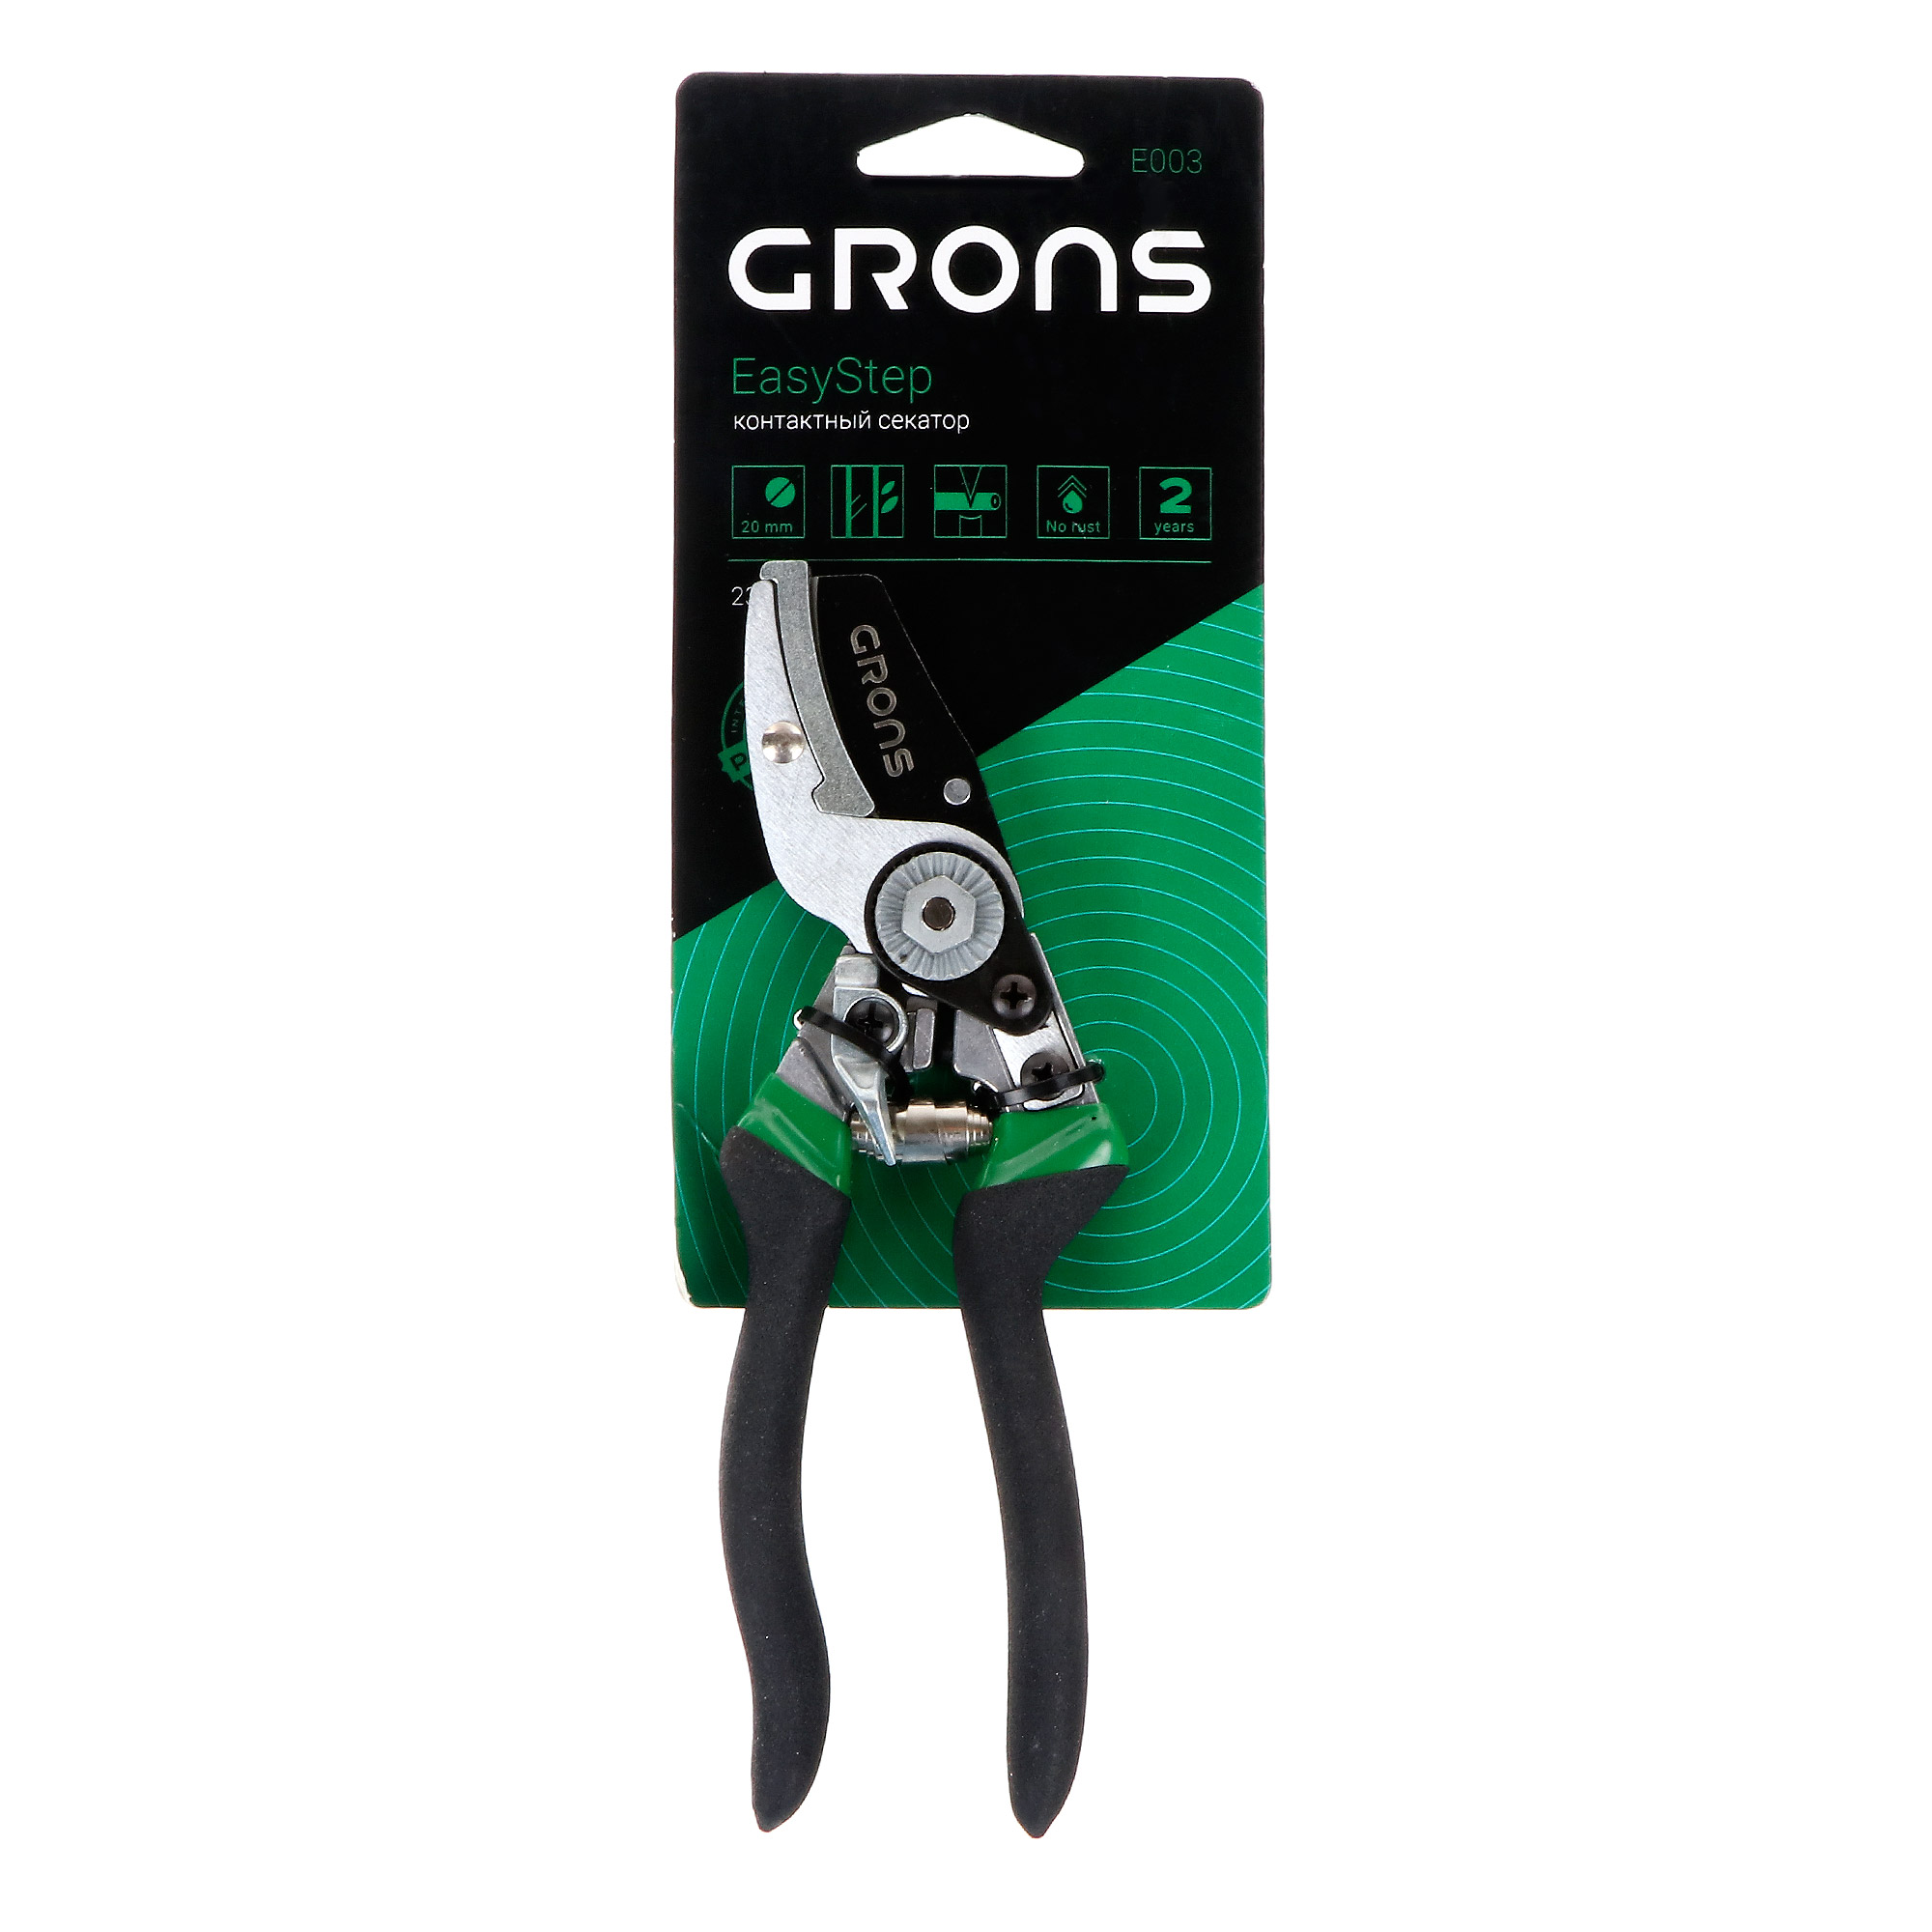 Секатор контактный Лама торф easystep grons E003 резина/сталь ножницы универсальные easystep grons